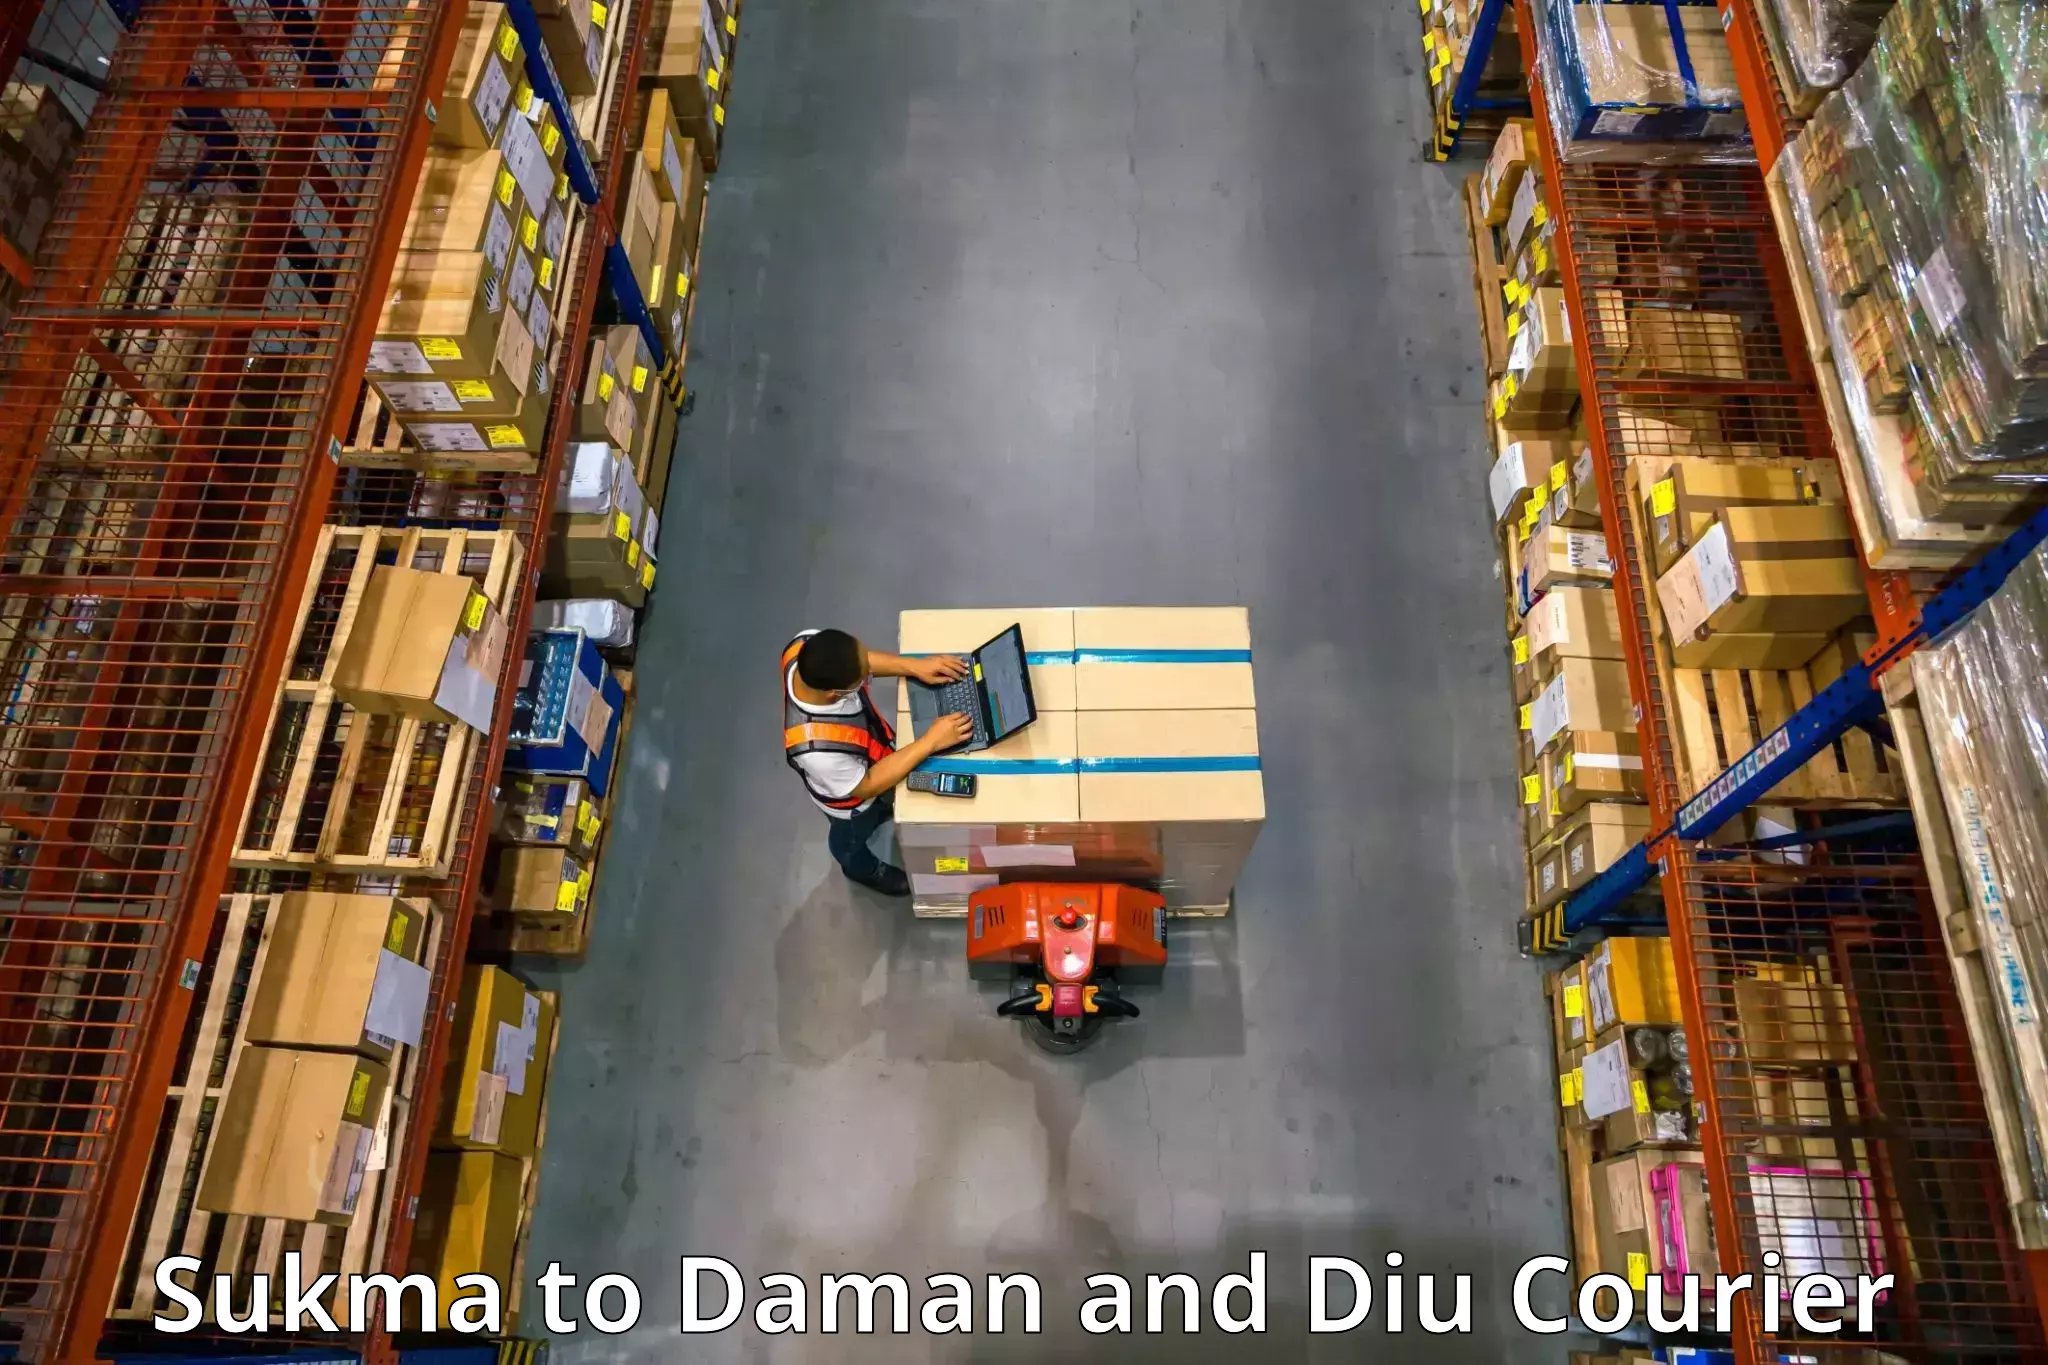 Furniture delivery service in Sukma to Diu